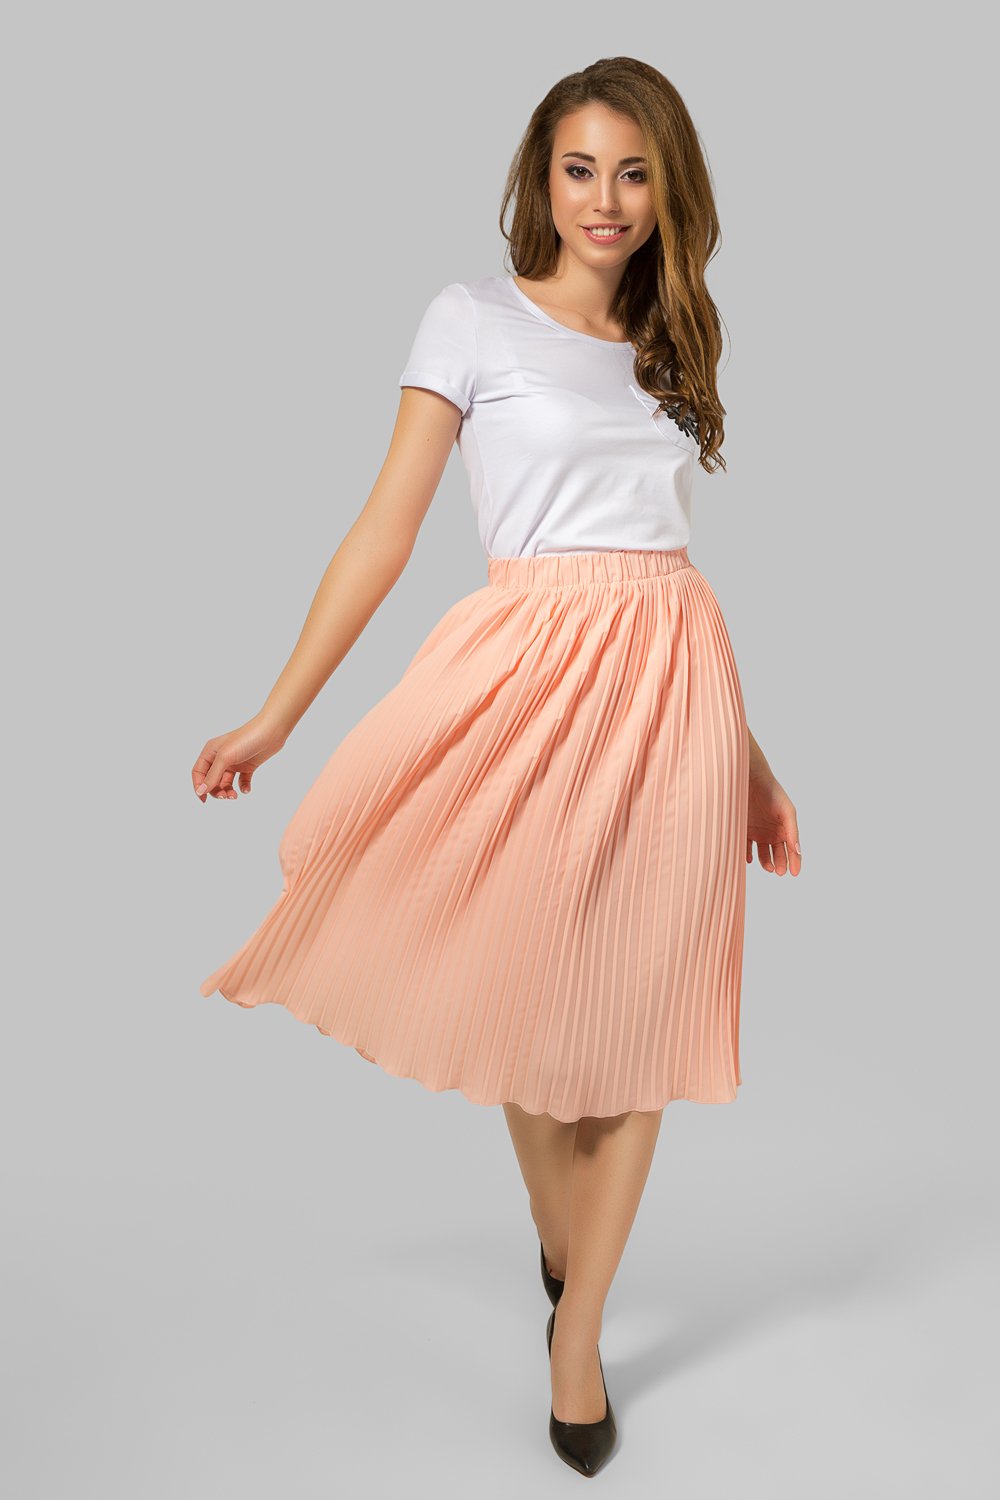 Peach pleated skirt